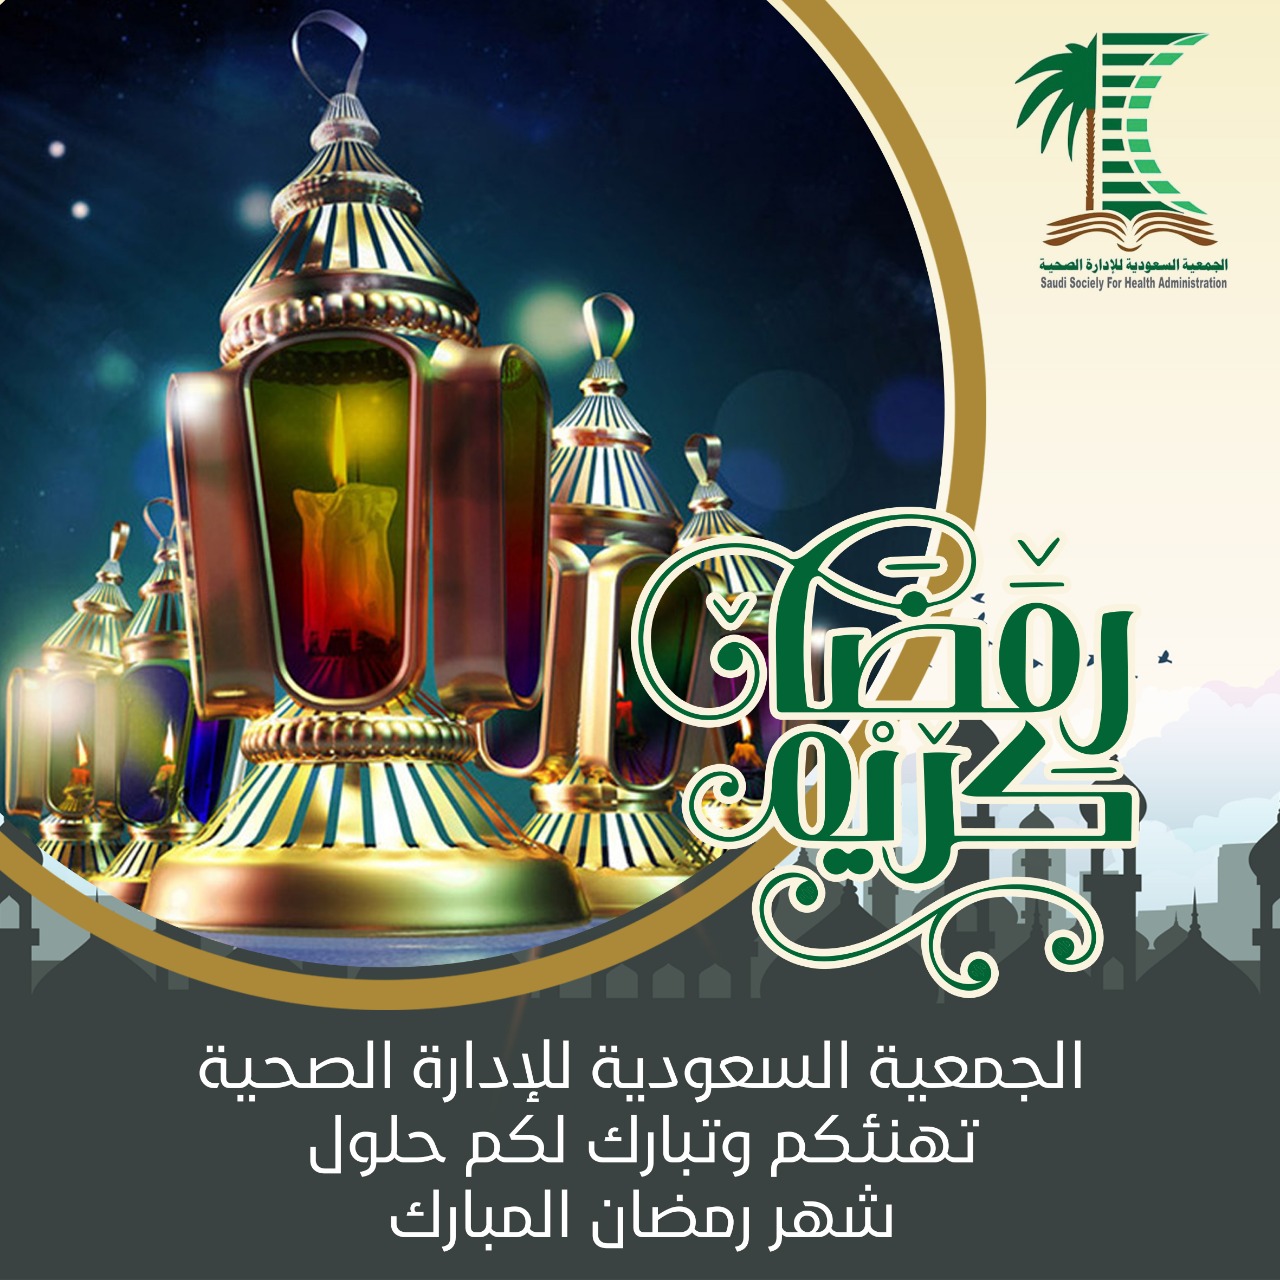 تجديد بطاقة الهيئة السعودية للتخصصات الصحية للعاطلين 2014 edition